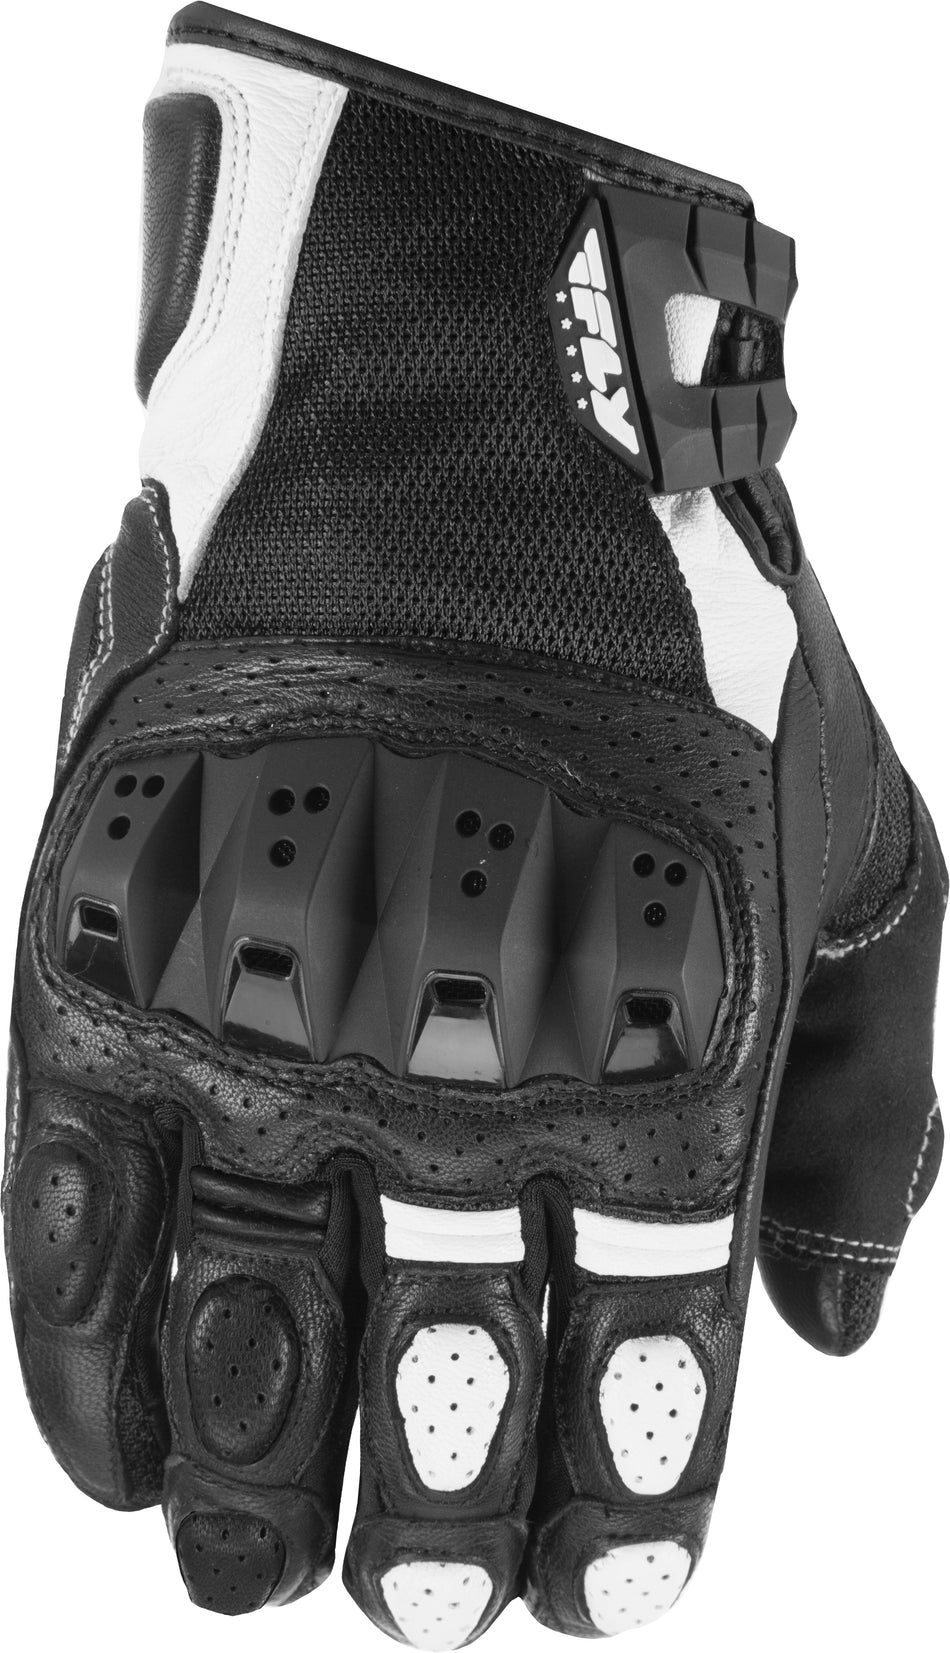 FLY RACING Brawler Gloves Black/White Lg #5884 476-2045~4